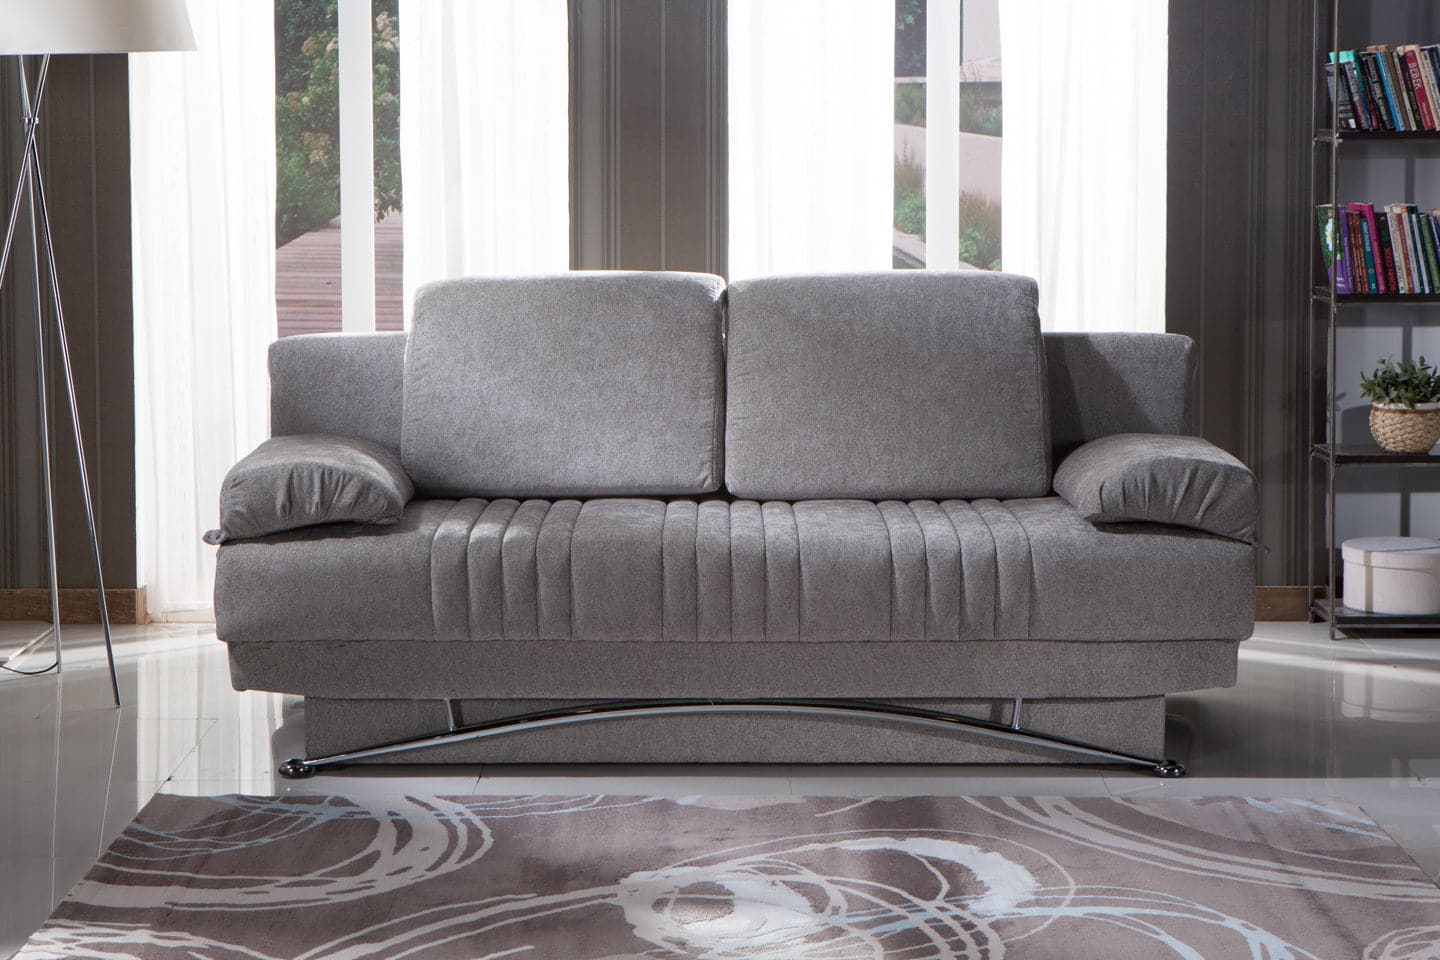 Fantasy 3 Seat Sleeper Sofa by Bellona VALENCIA GREY PLAIN FABRIC